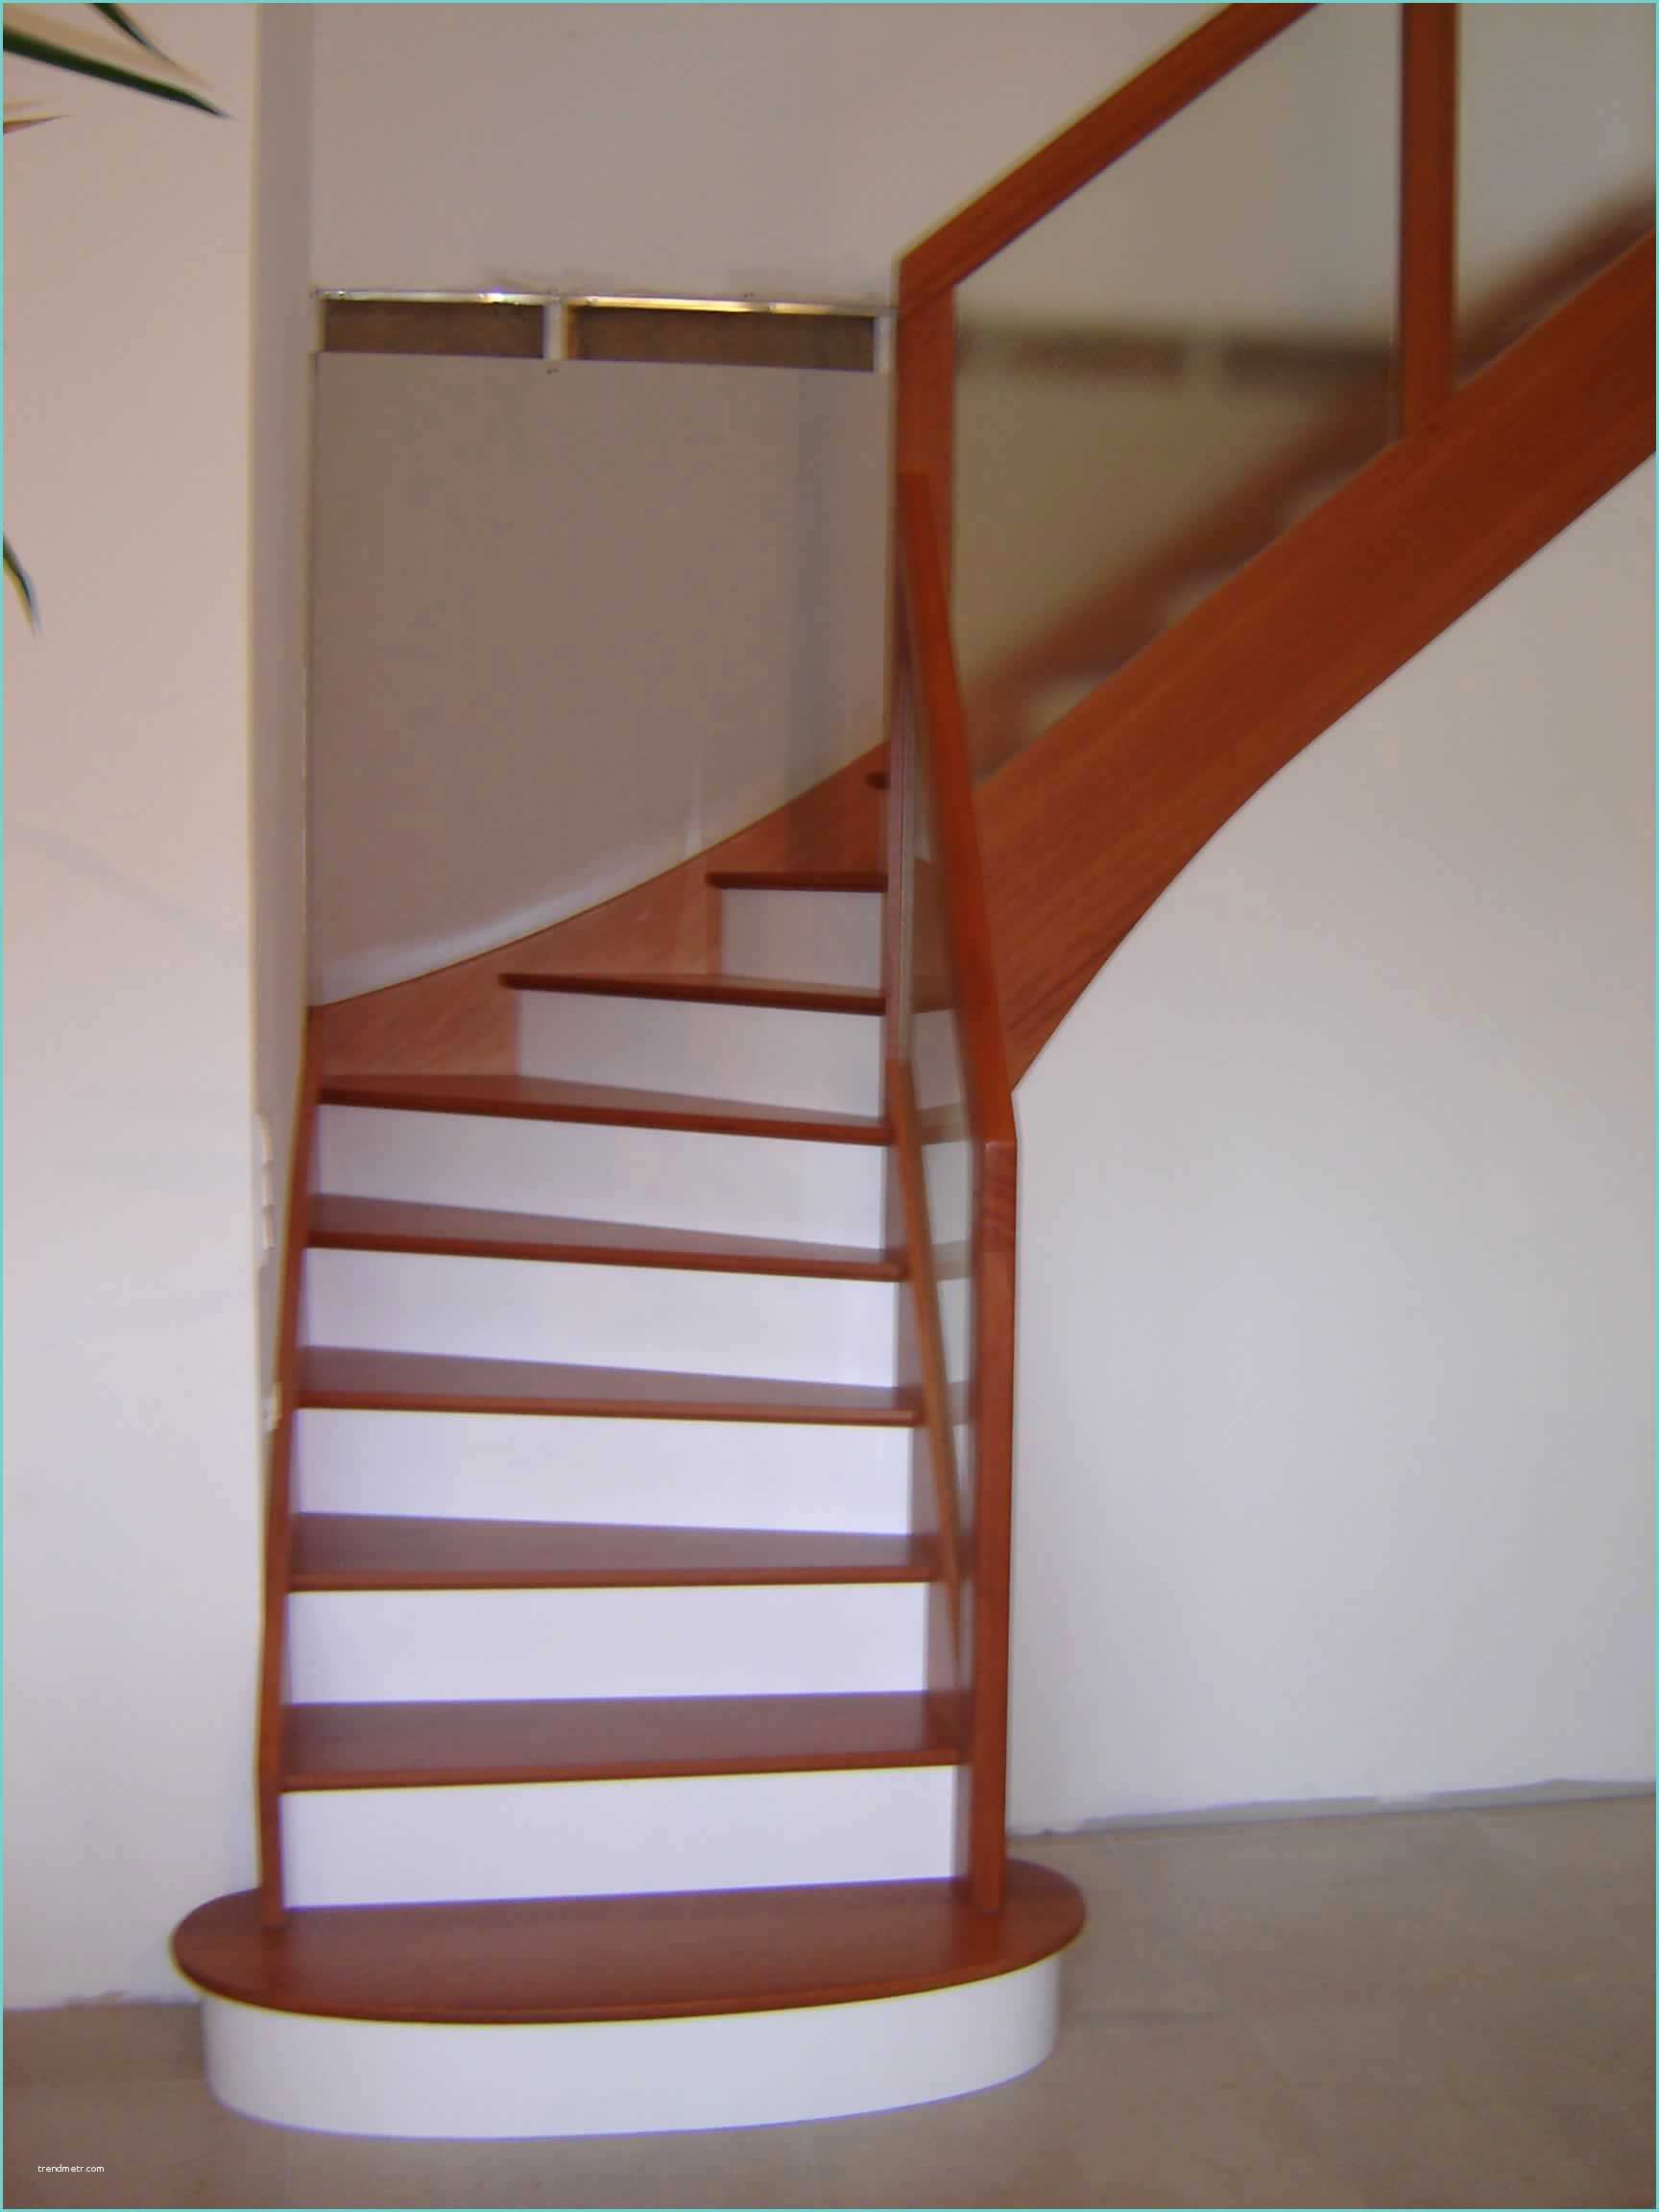 Escalier Repeint En Blanc Escalier Peint En Taupe Affordable Escalier Repeint En